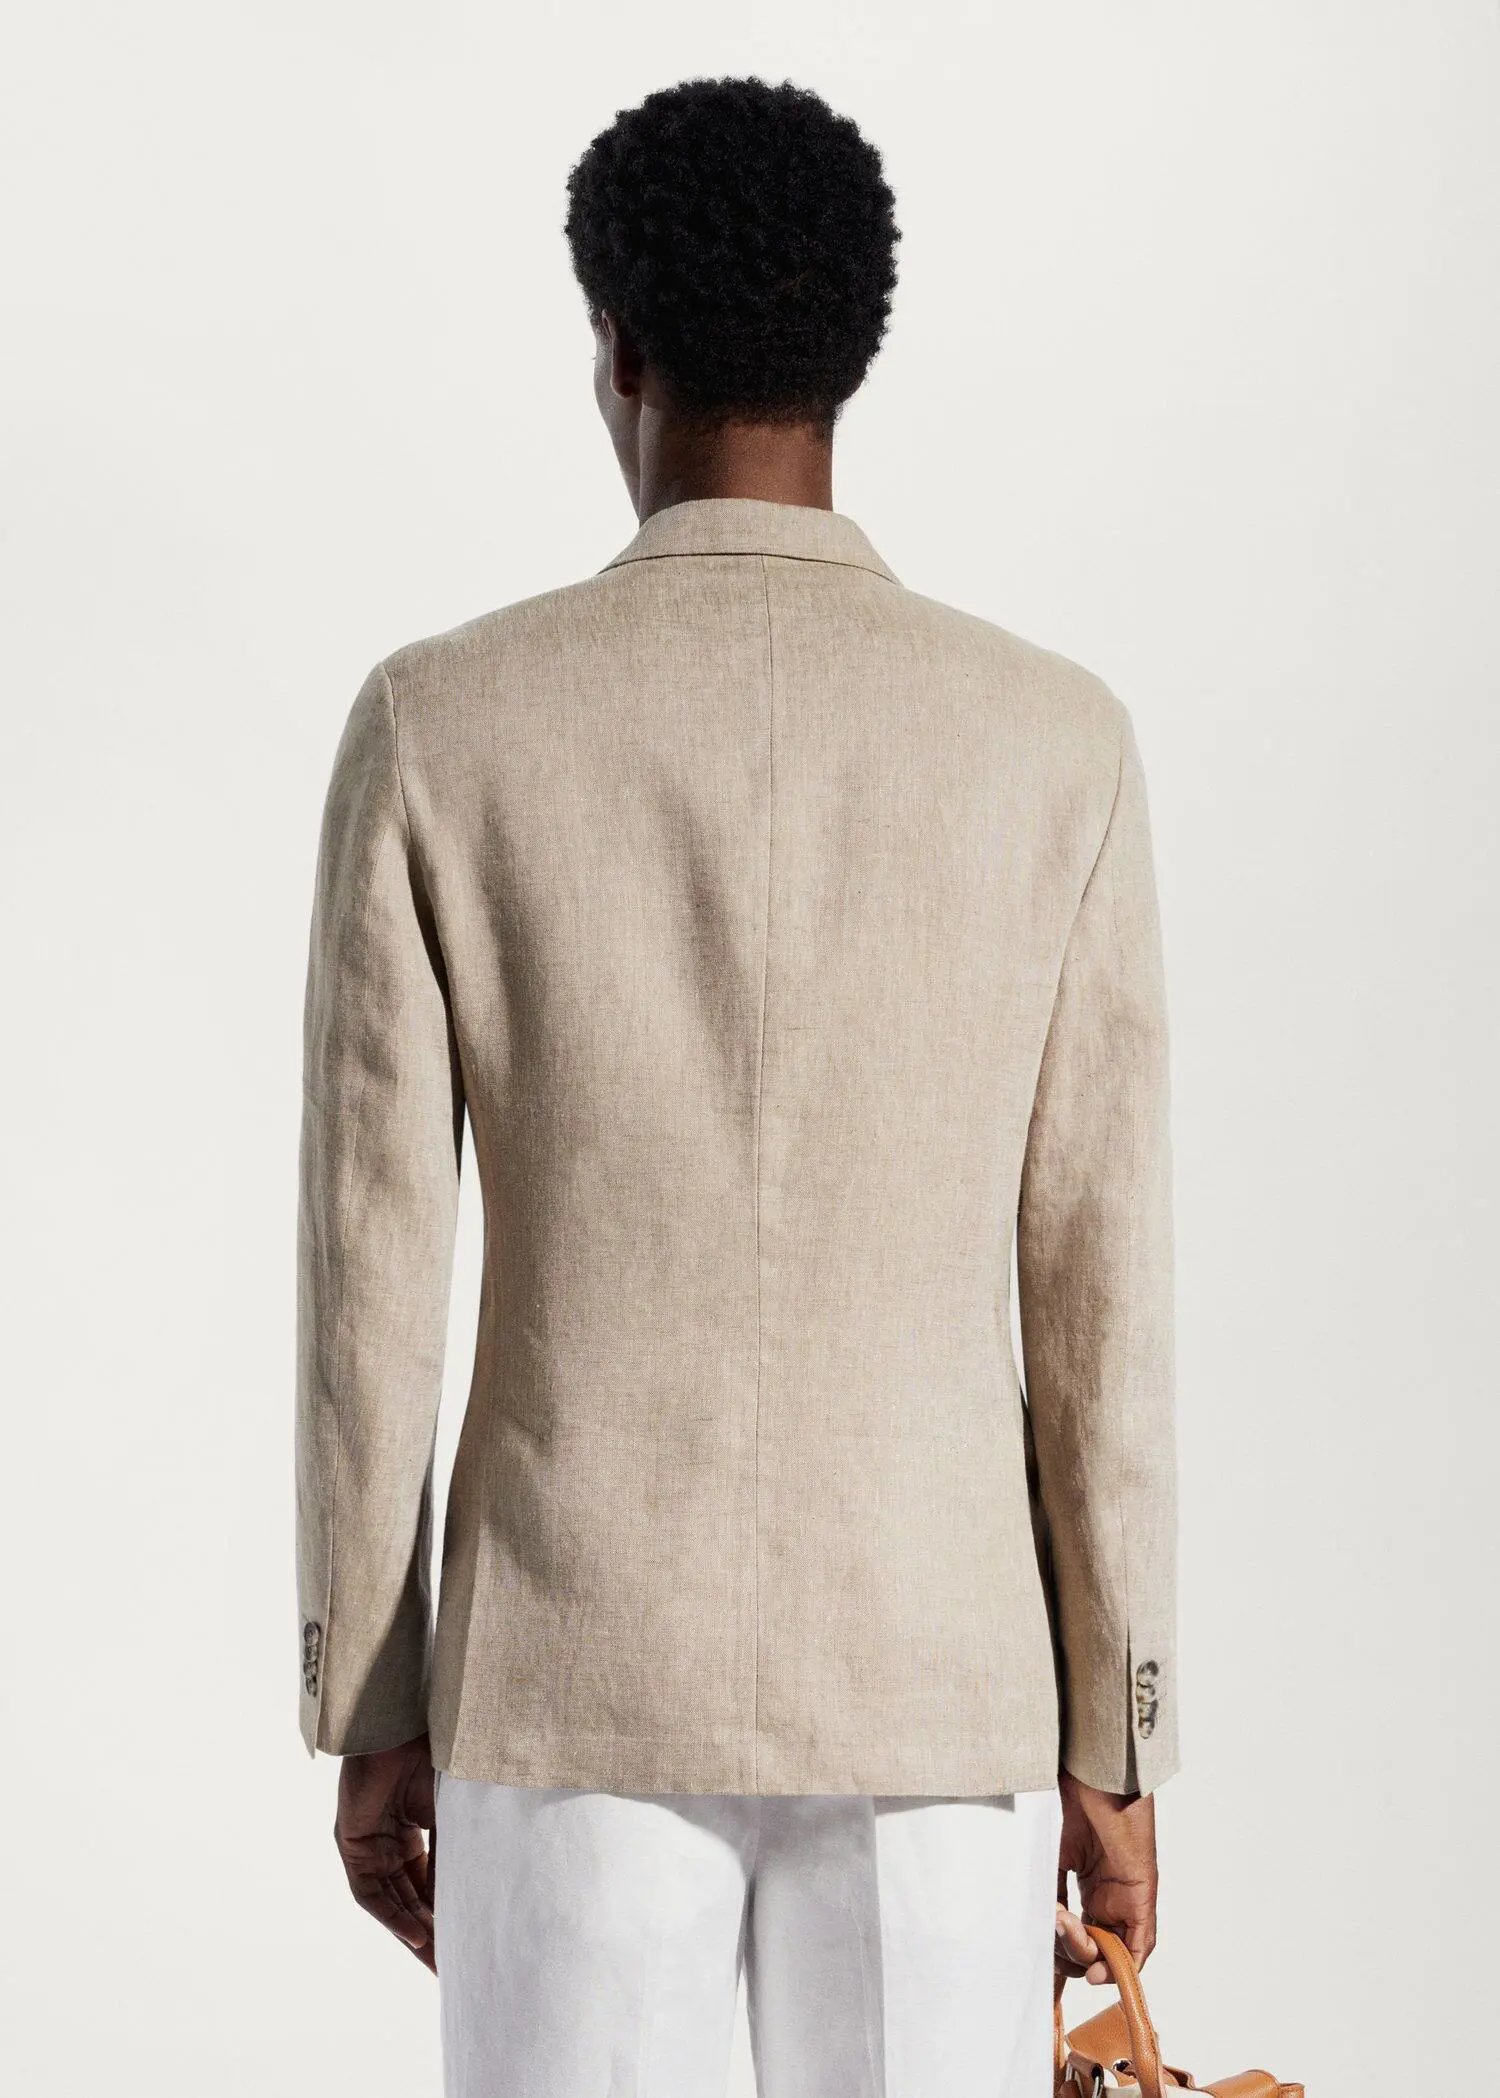 Mango 100% linen slim fit blazer. a man wearing a tan jacket and a white shirt. 